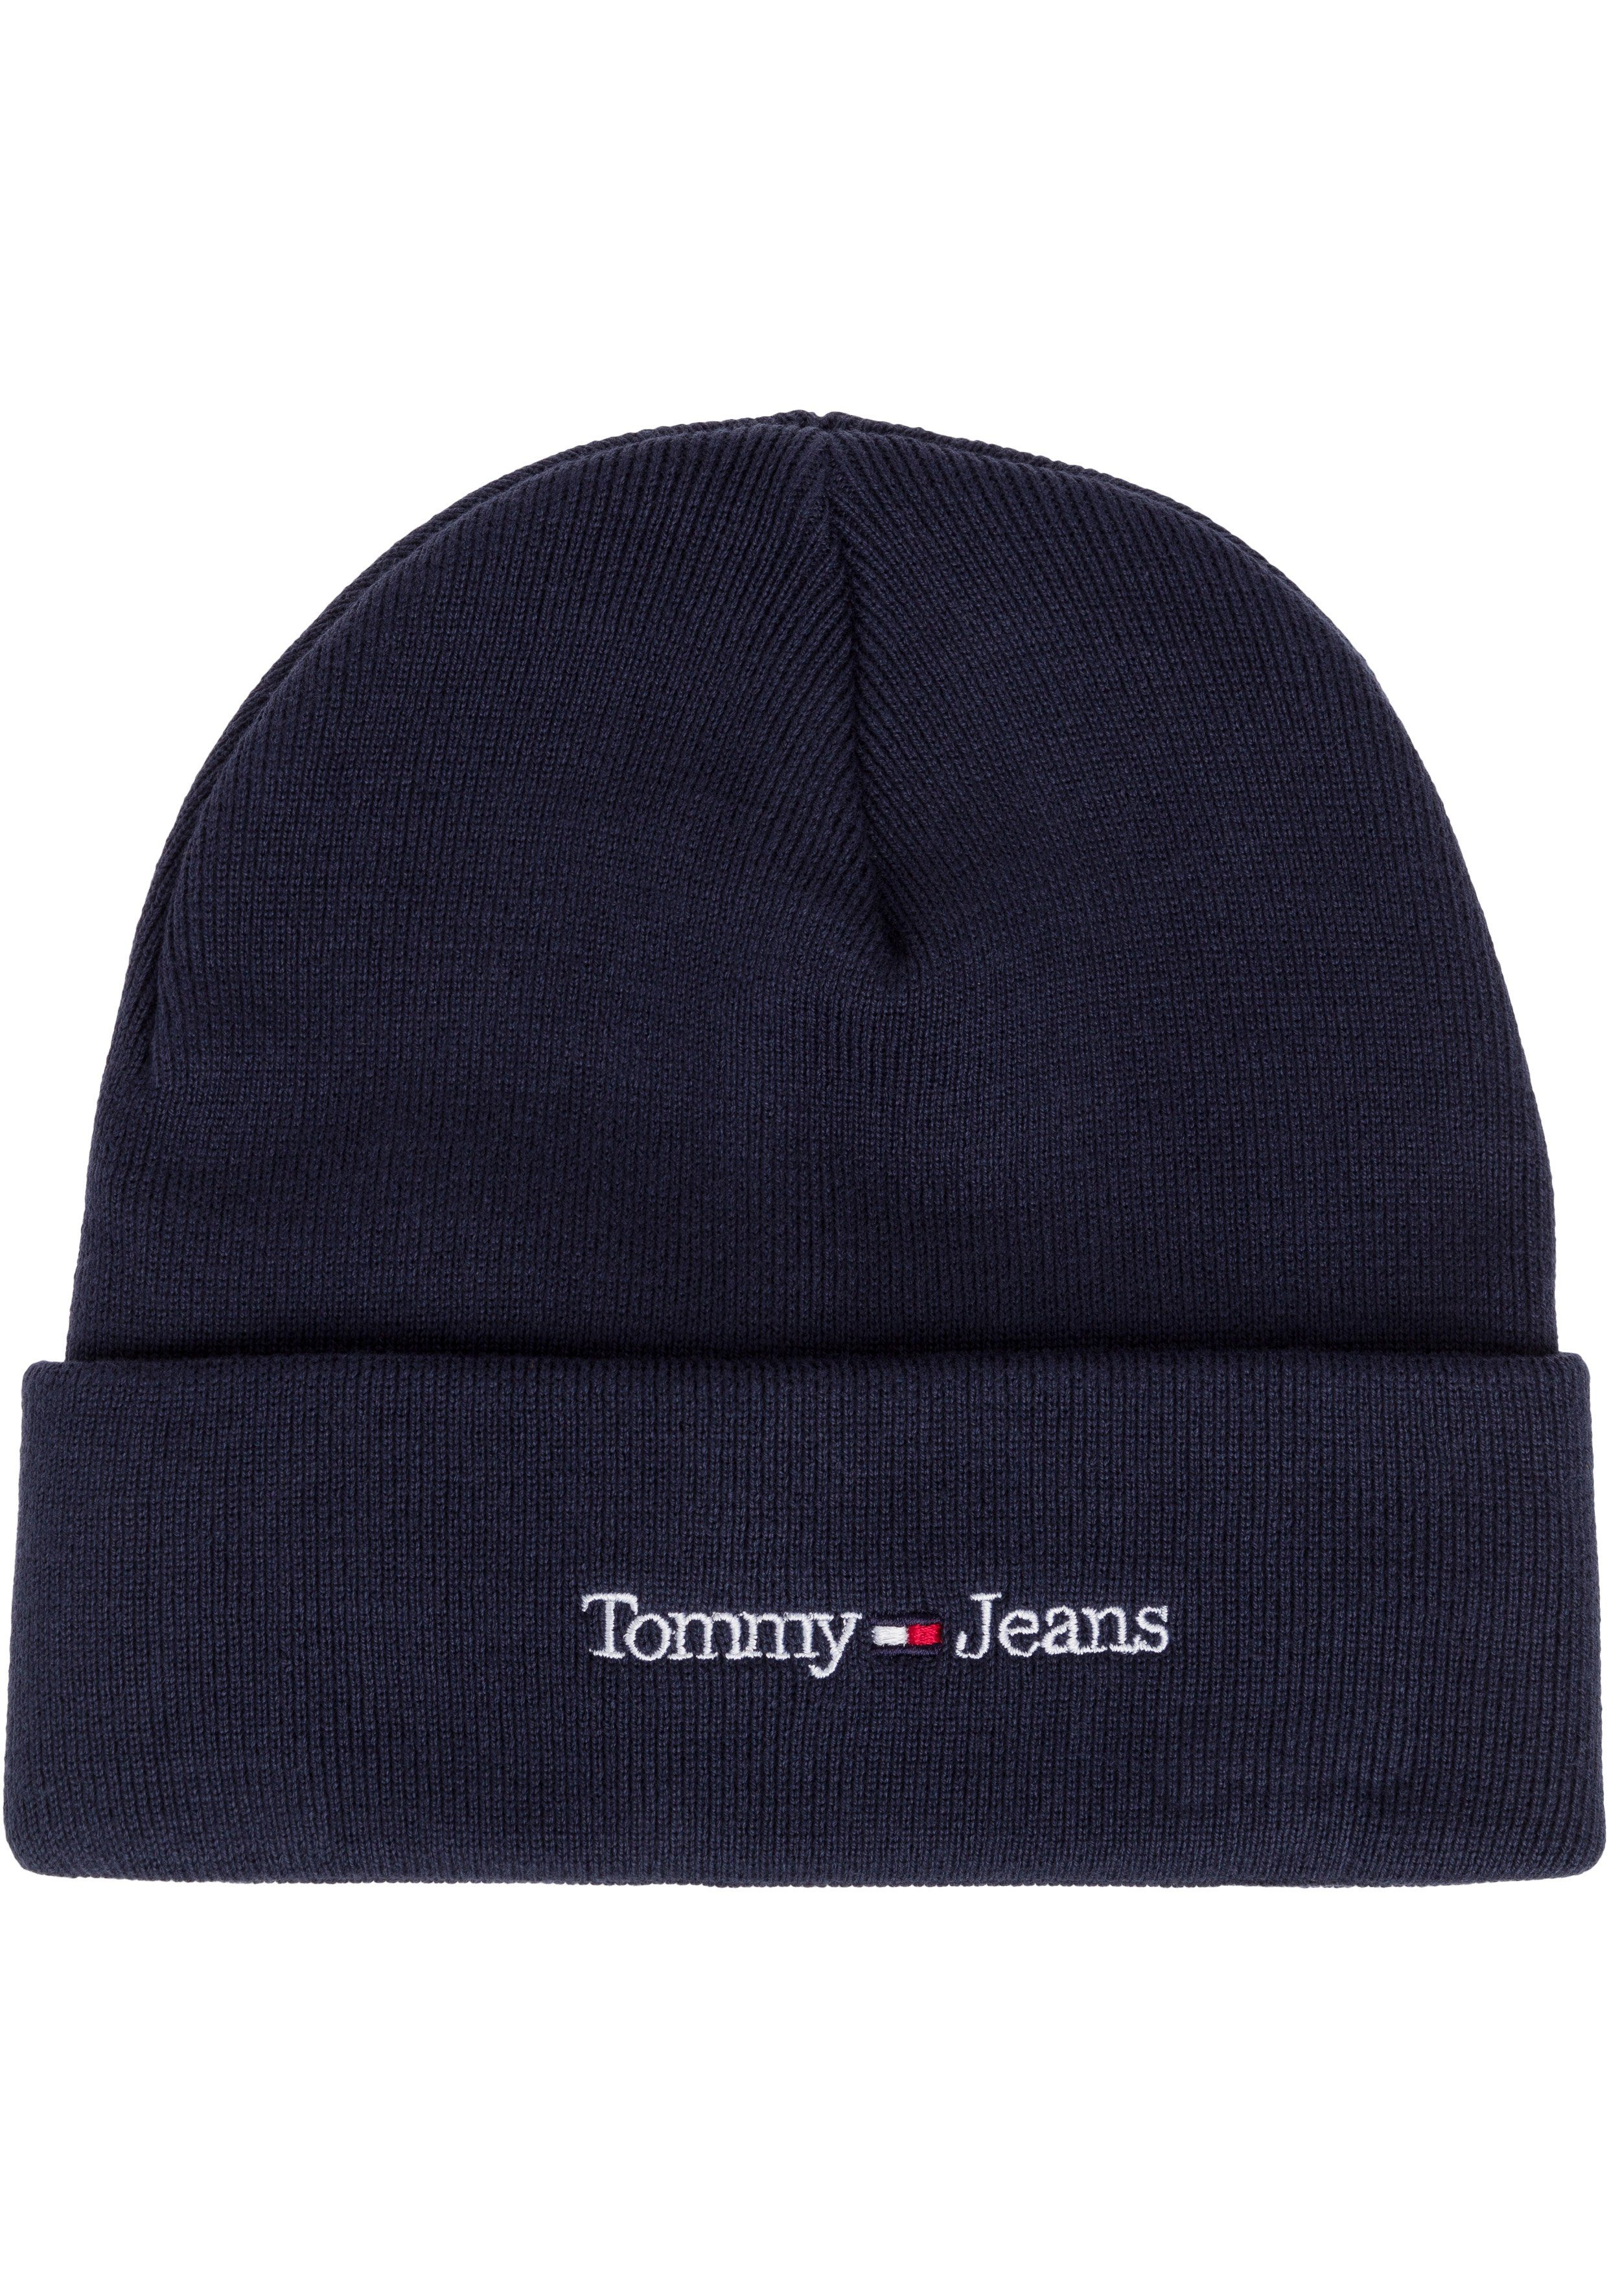 Tommy Jeans Beanie cooler Style mit wärmenden Eigenschaften navy | Strickmützen